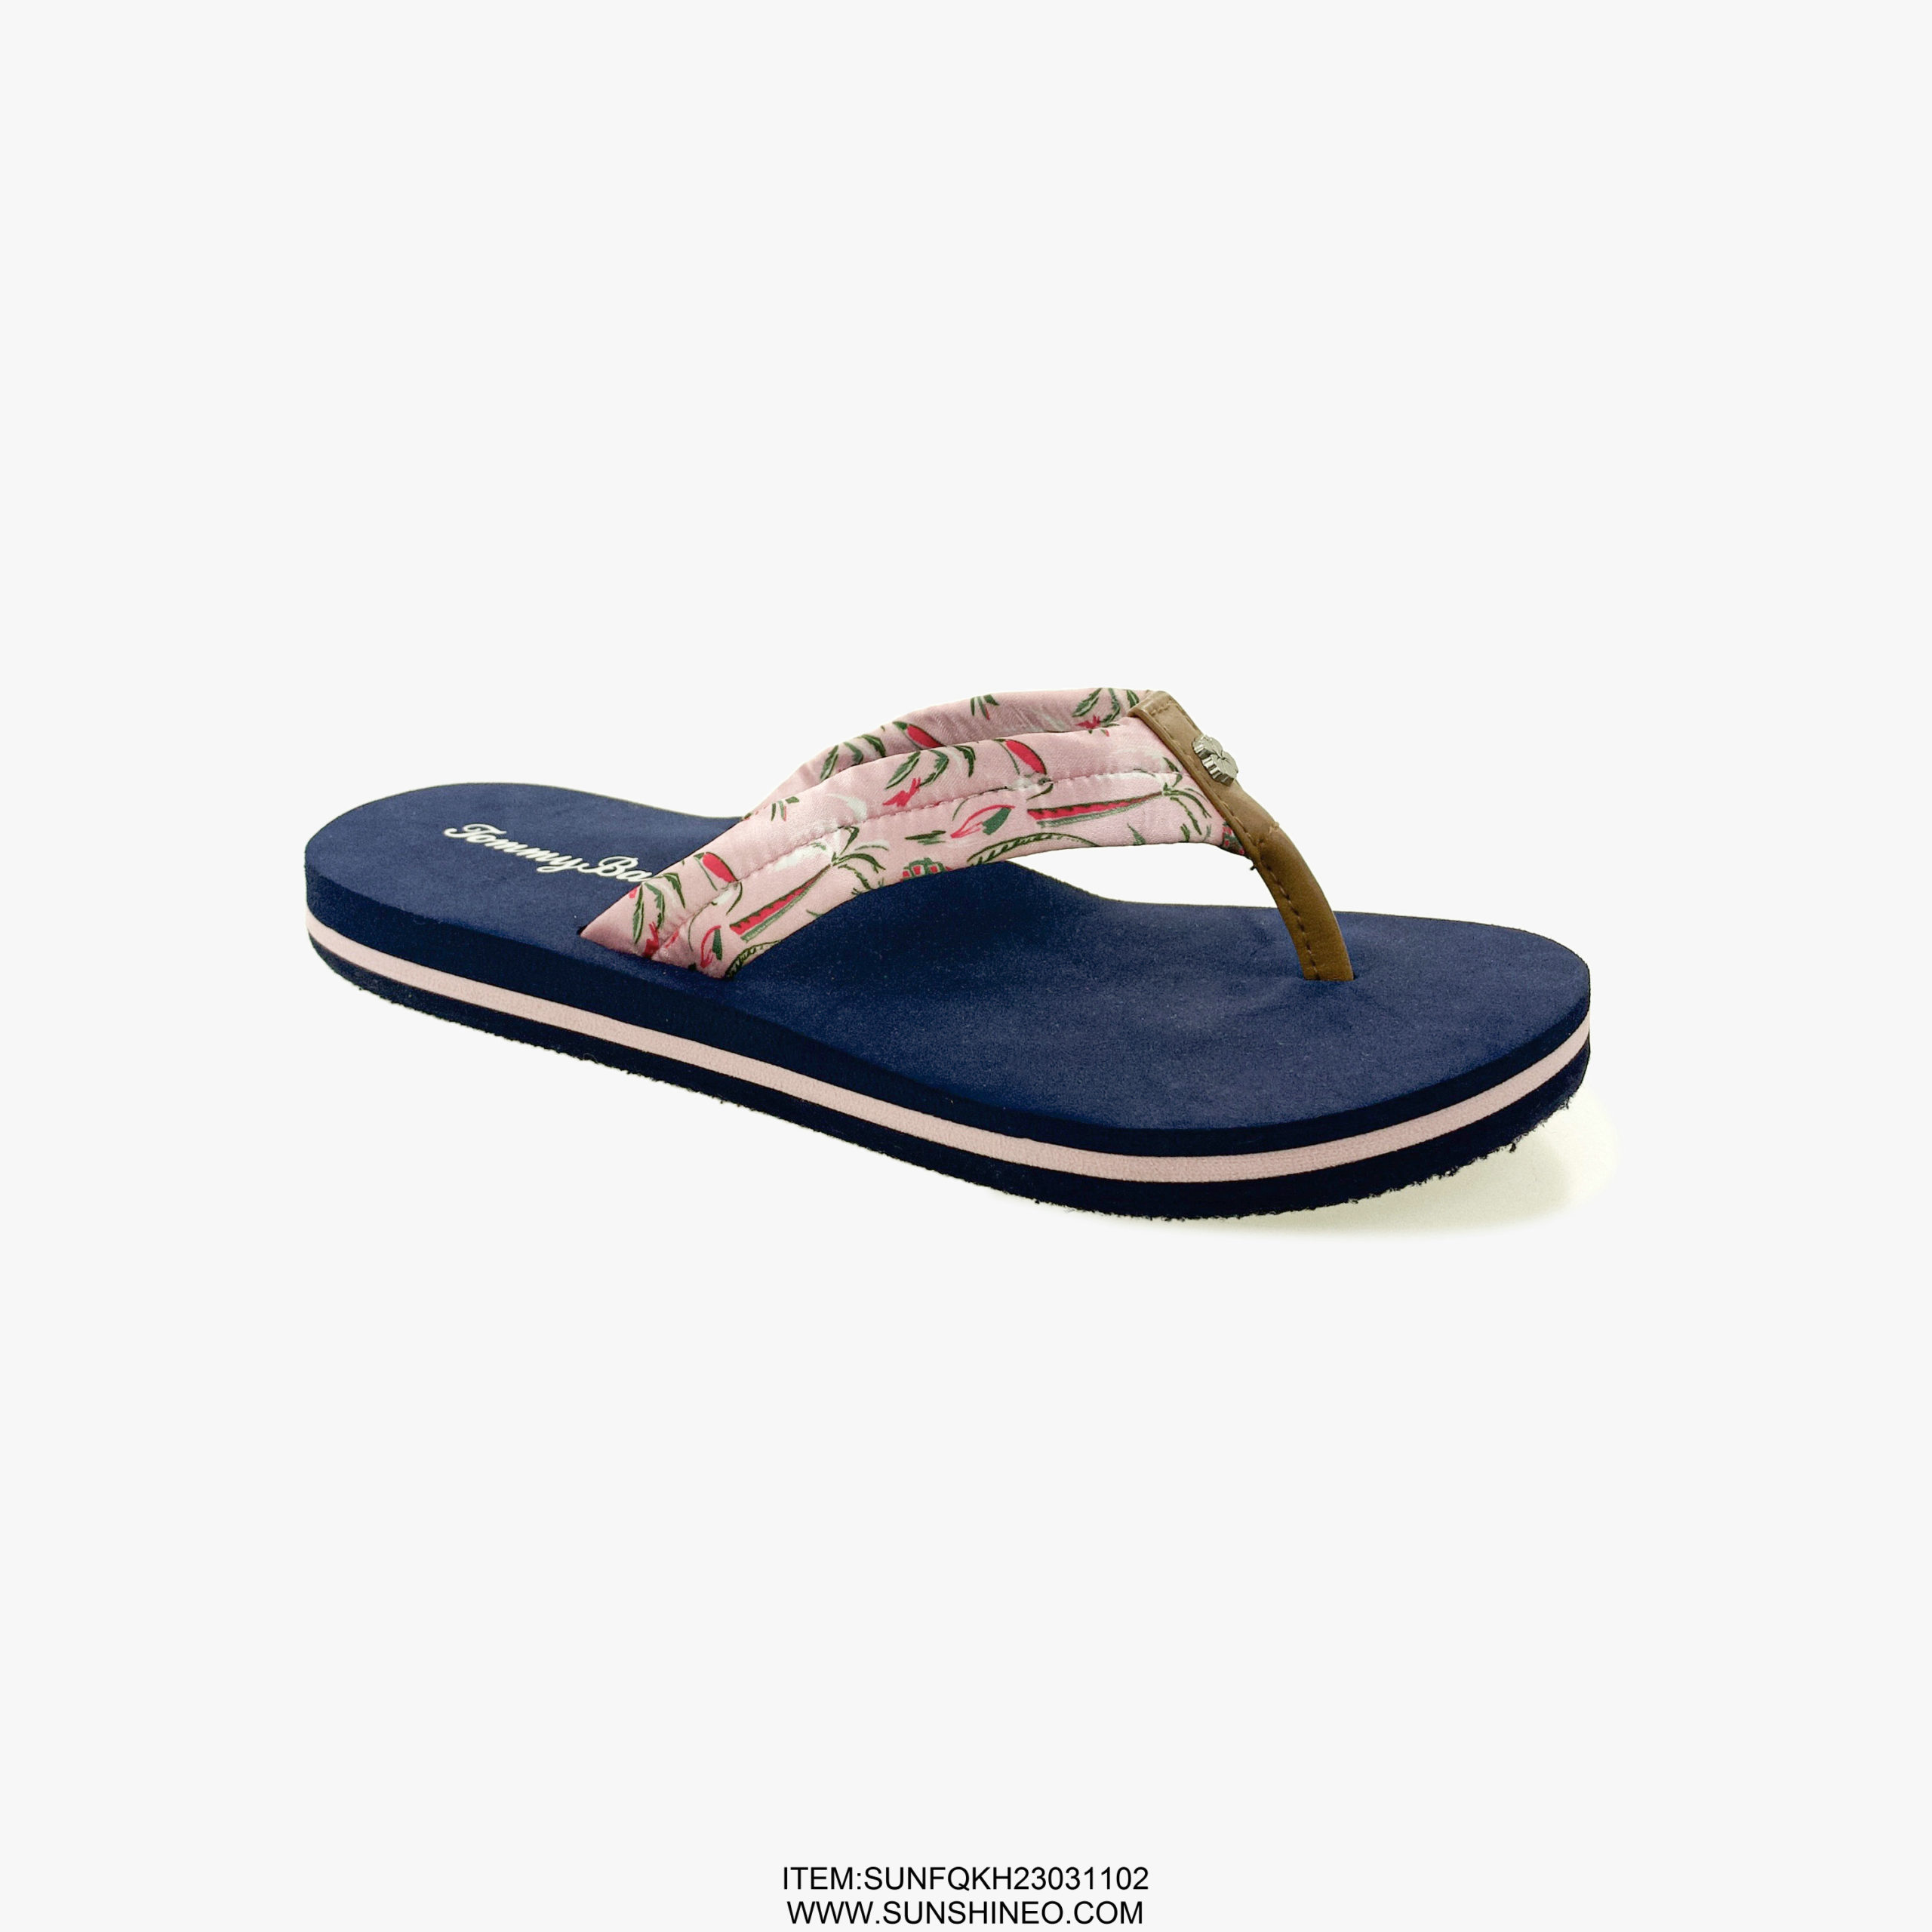 SUNFQKH23031102 flip flop sandals